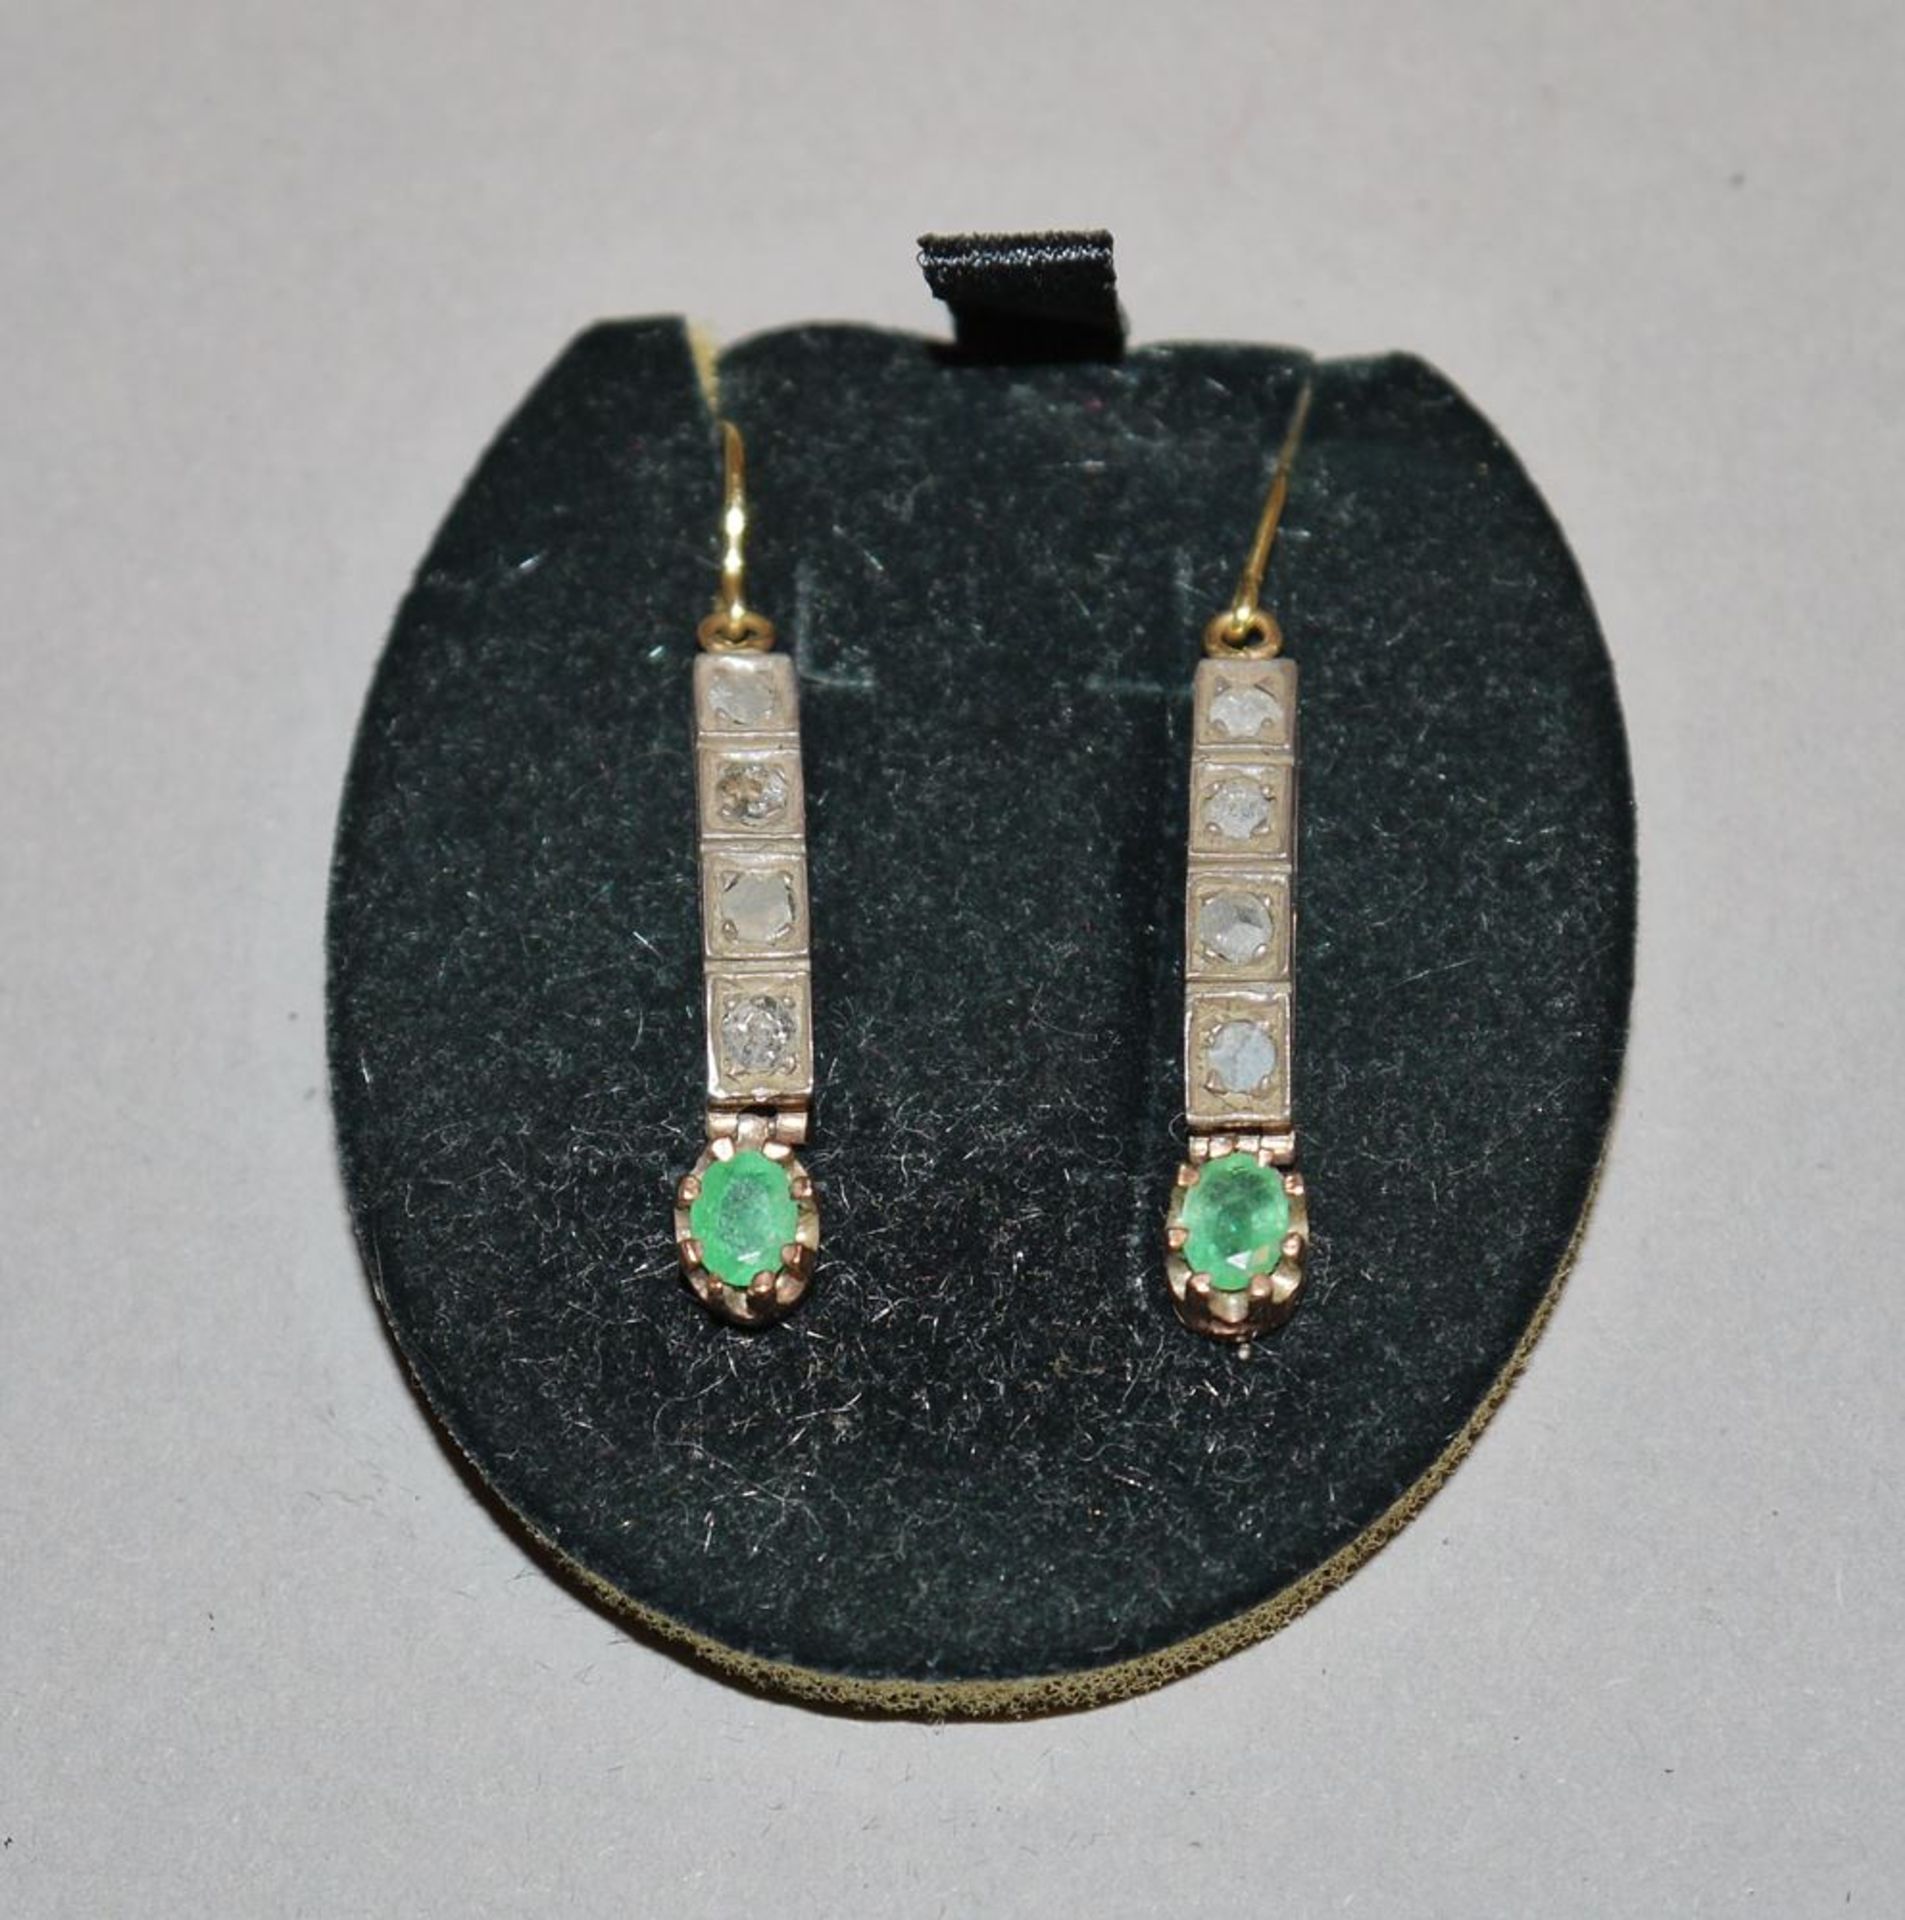 Ohrhänger mit Diamanten und Smaragden, Gold um 1900/20